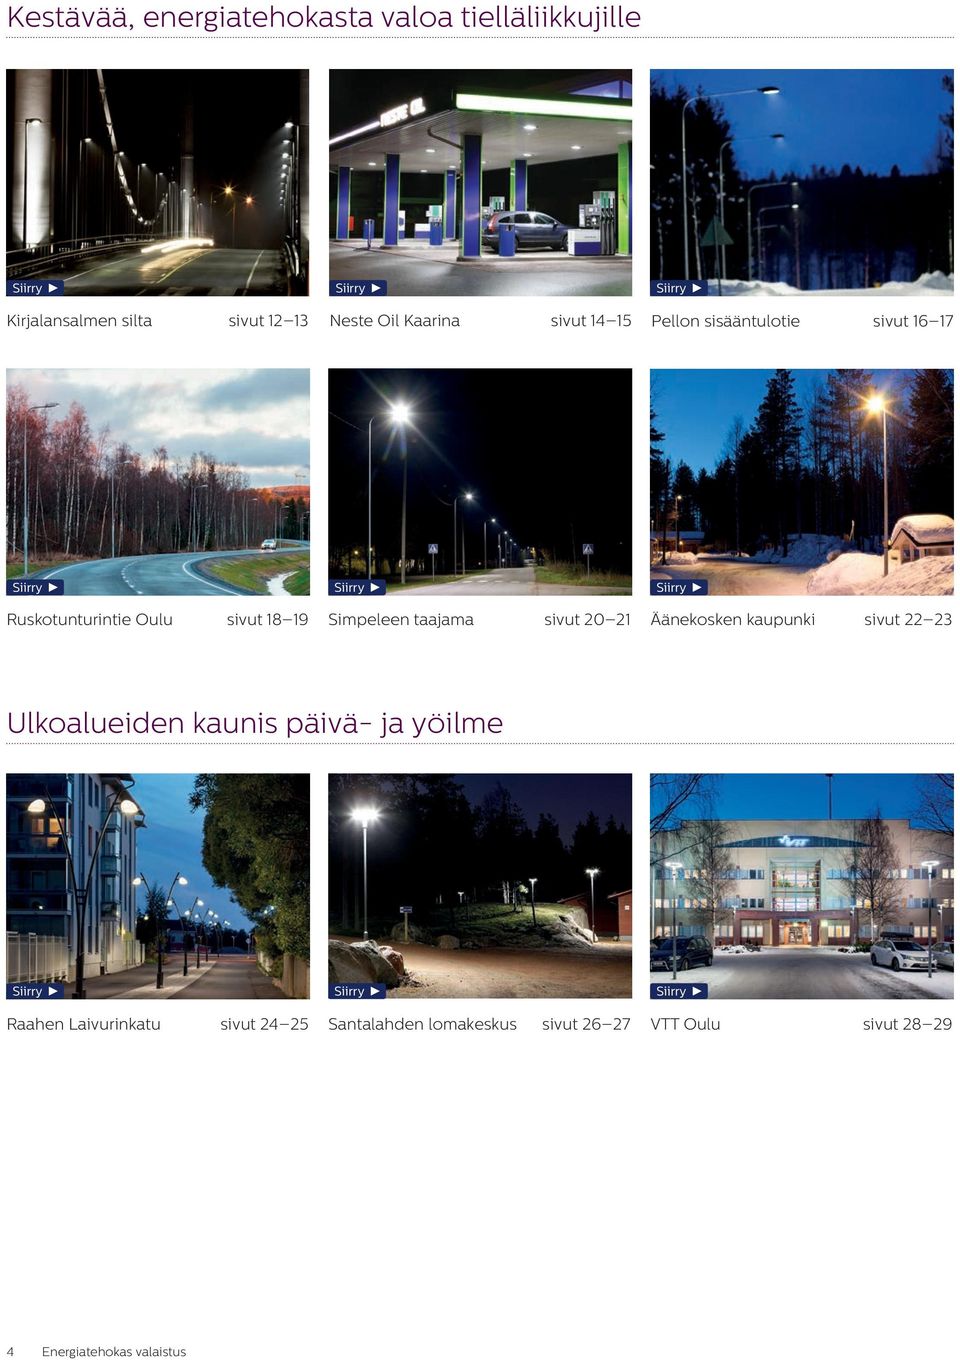 Simpeleen taajama sivut 20 21 Äänekosken kaupunki sivut 22 23 Ulkoalueiden kaunis päivä- ja yöilme Siirry Siirry